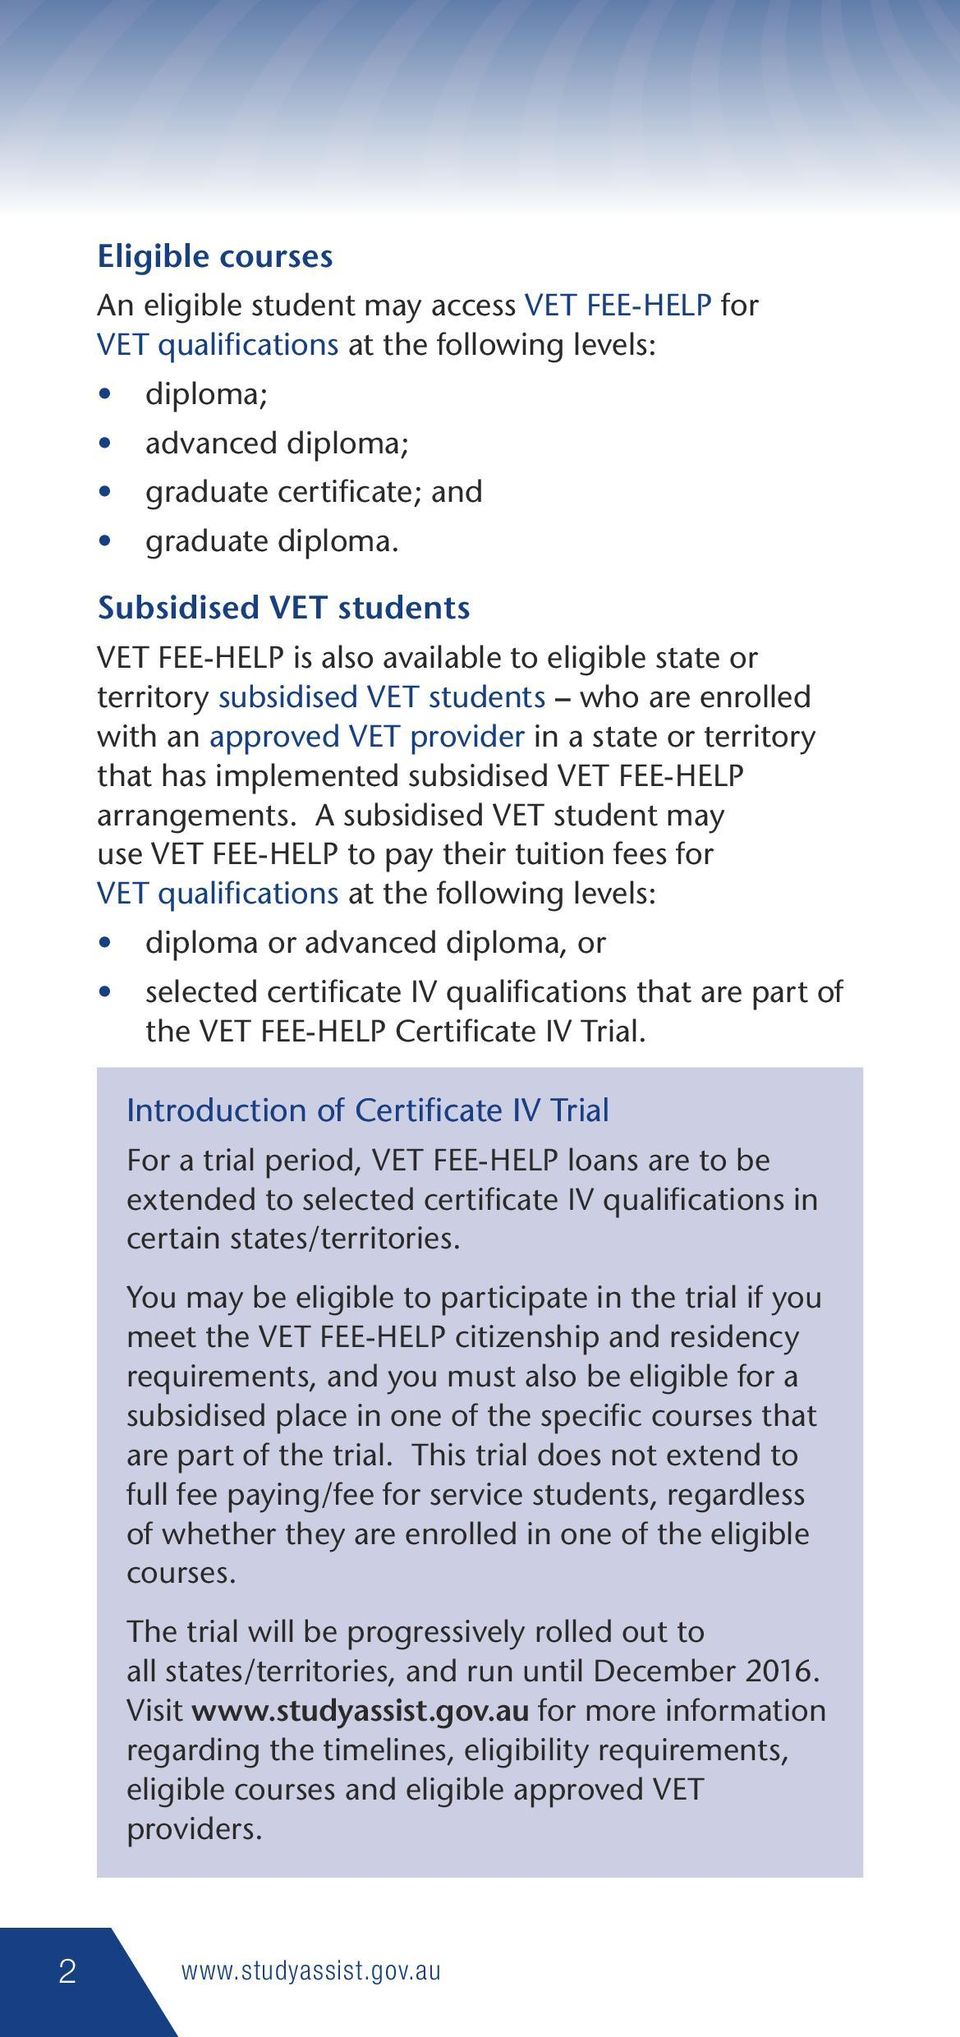 implemented subsidised VET FEE-HELP arrangements.